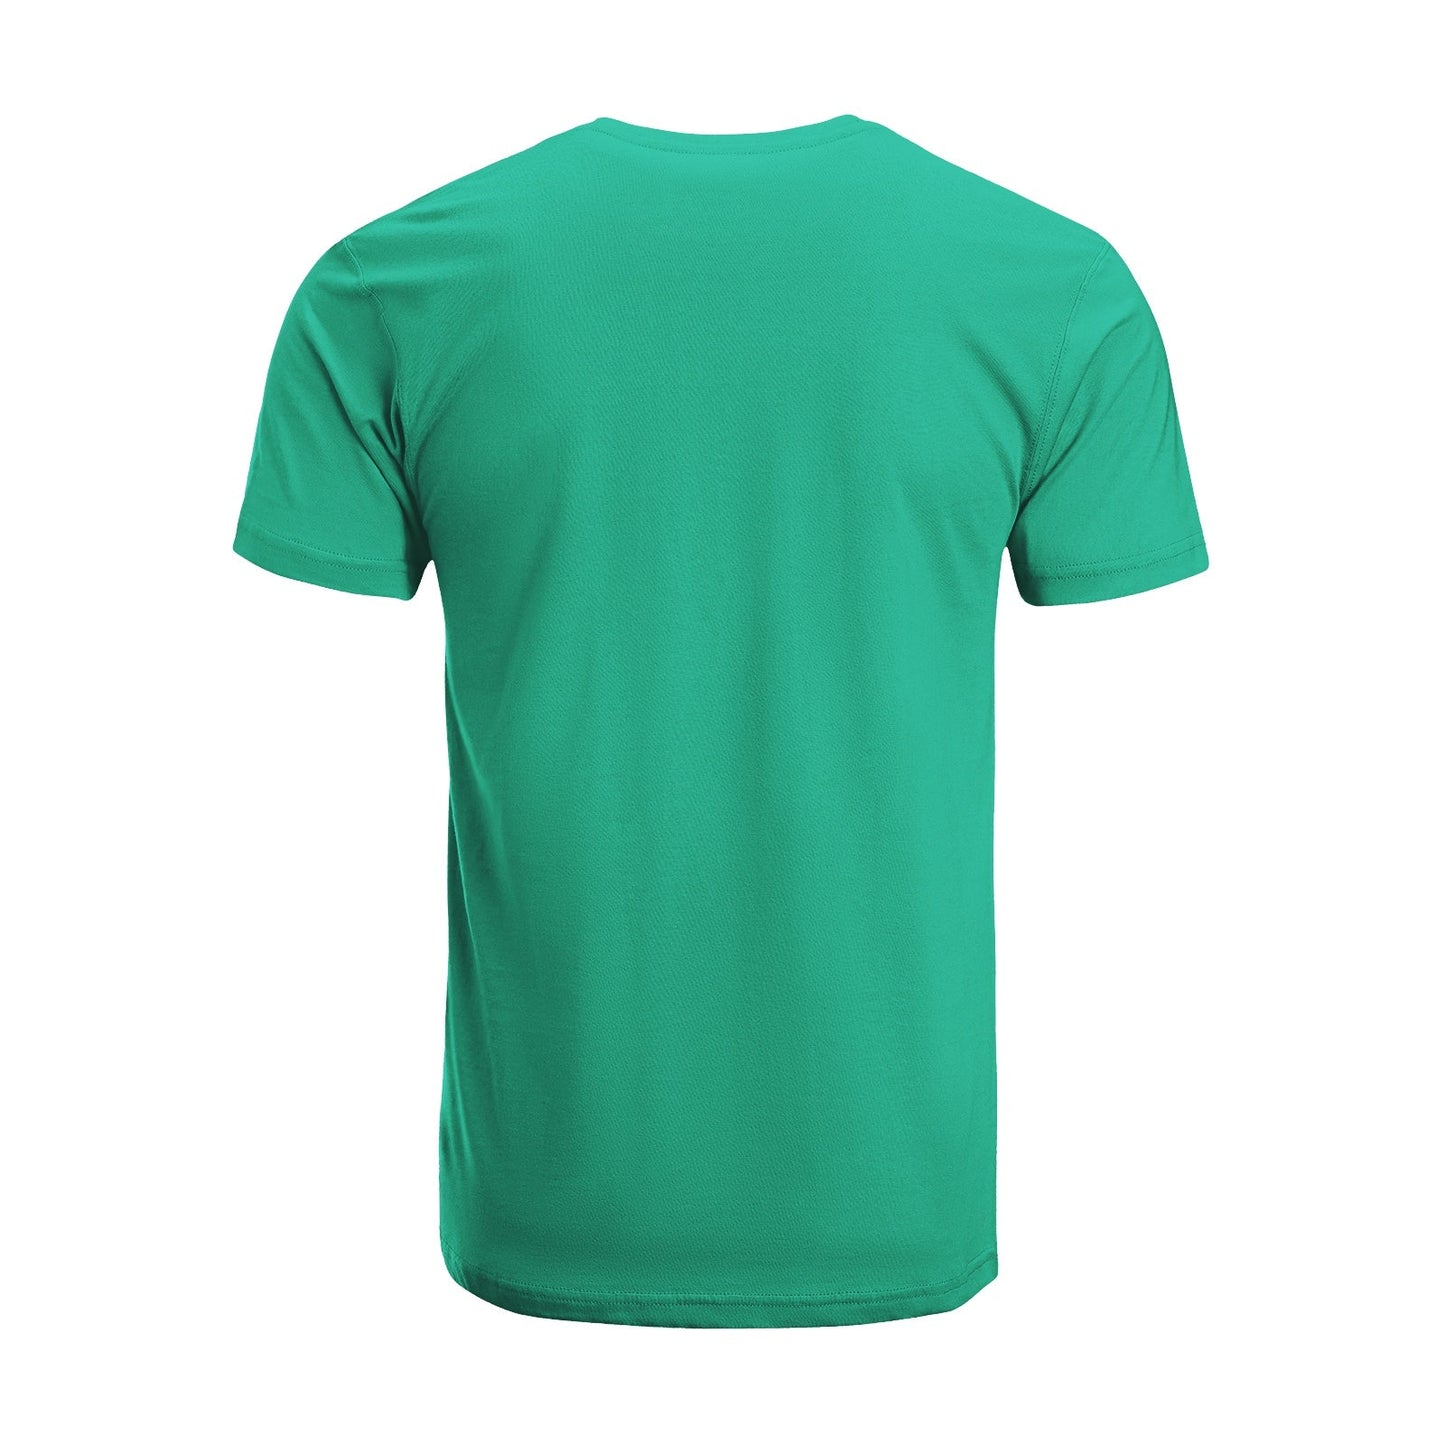 Unisex Short Sleeve Crew Neck Cotton Jersey T-Shirt TRUCK 44